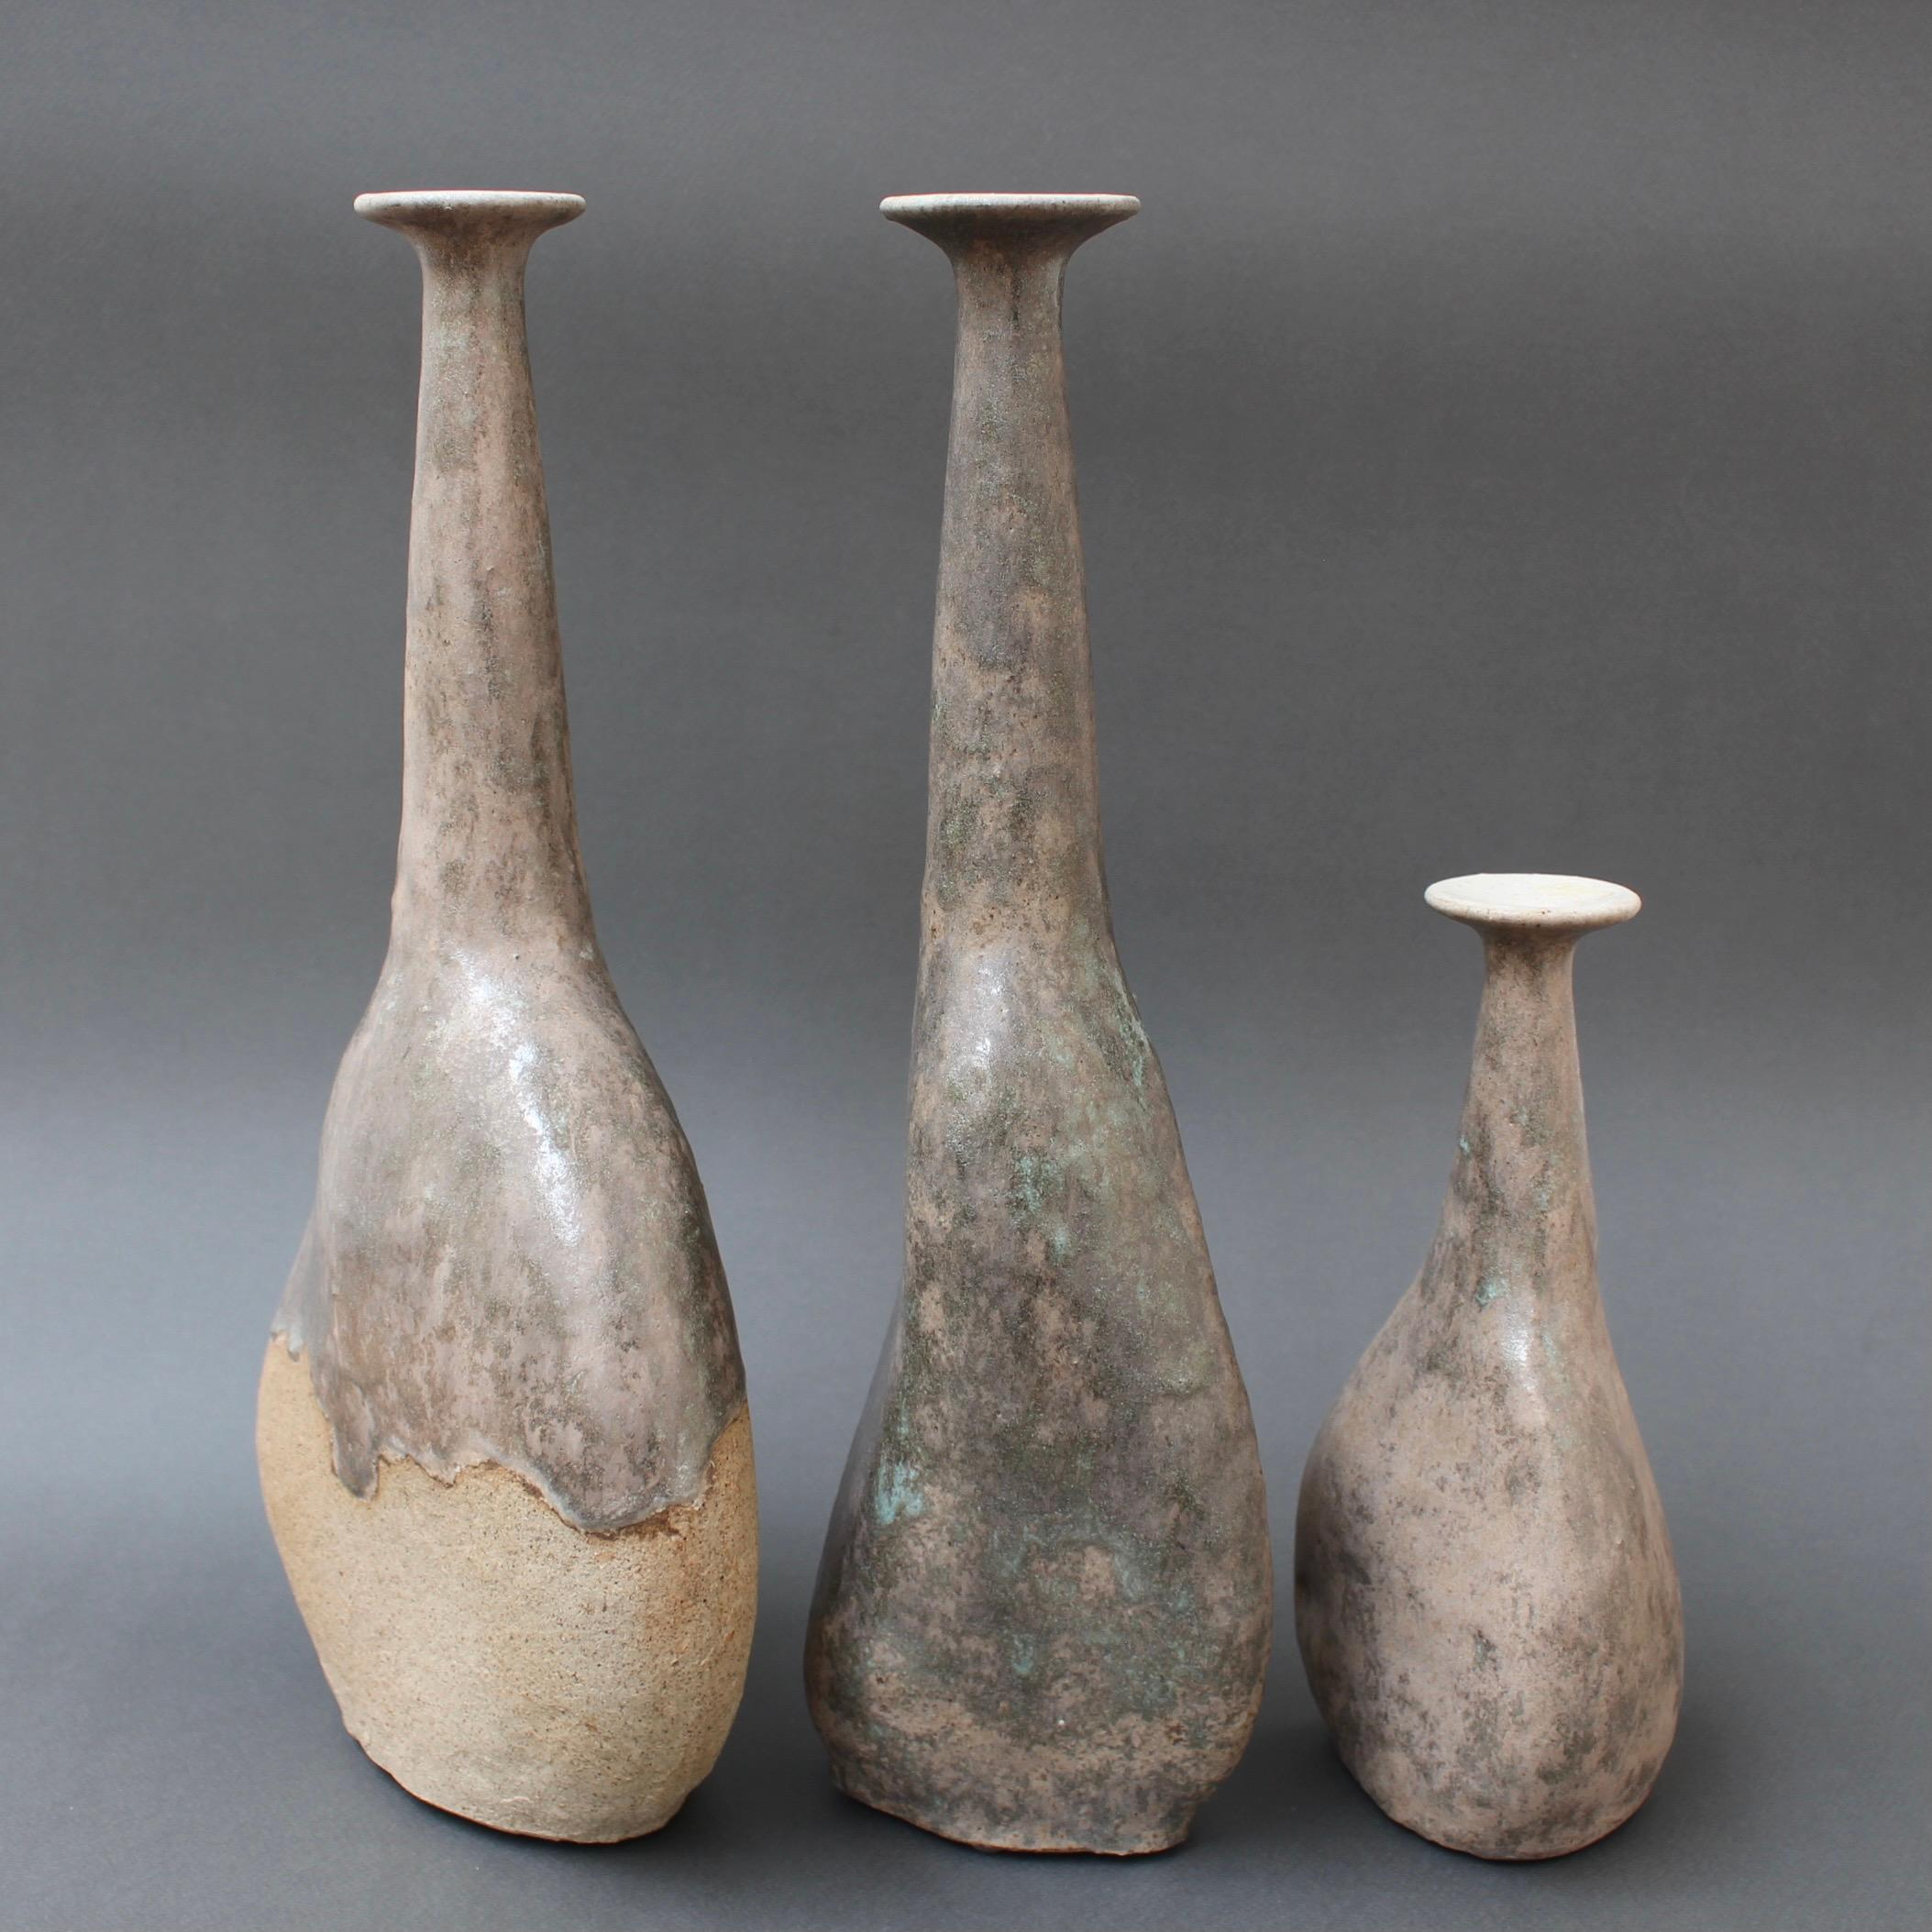 Ensemble de trois vases en grès du céramiste italien Bruno Gambone, (vers les années 1980). Ces trois vases à fleurs uniques, gracieux et à ouverture étroite sont des œuvres d'art qui semblent avoir été formées ou sculptées à partir de pierres plus